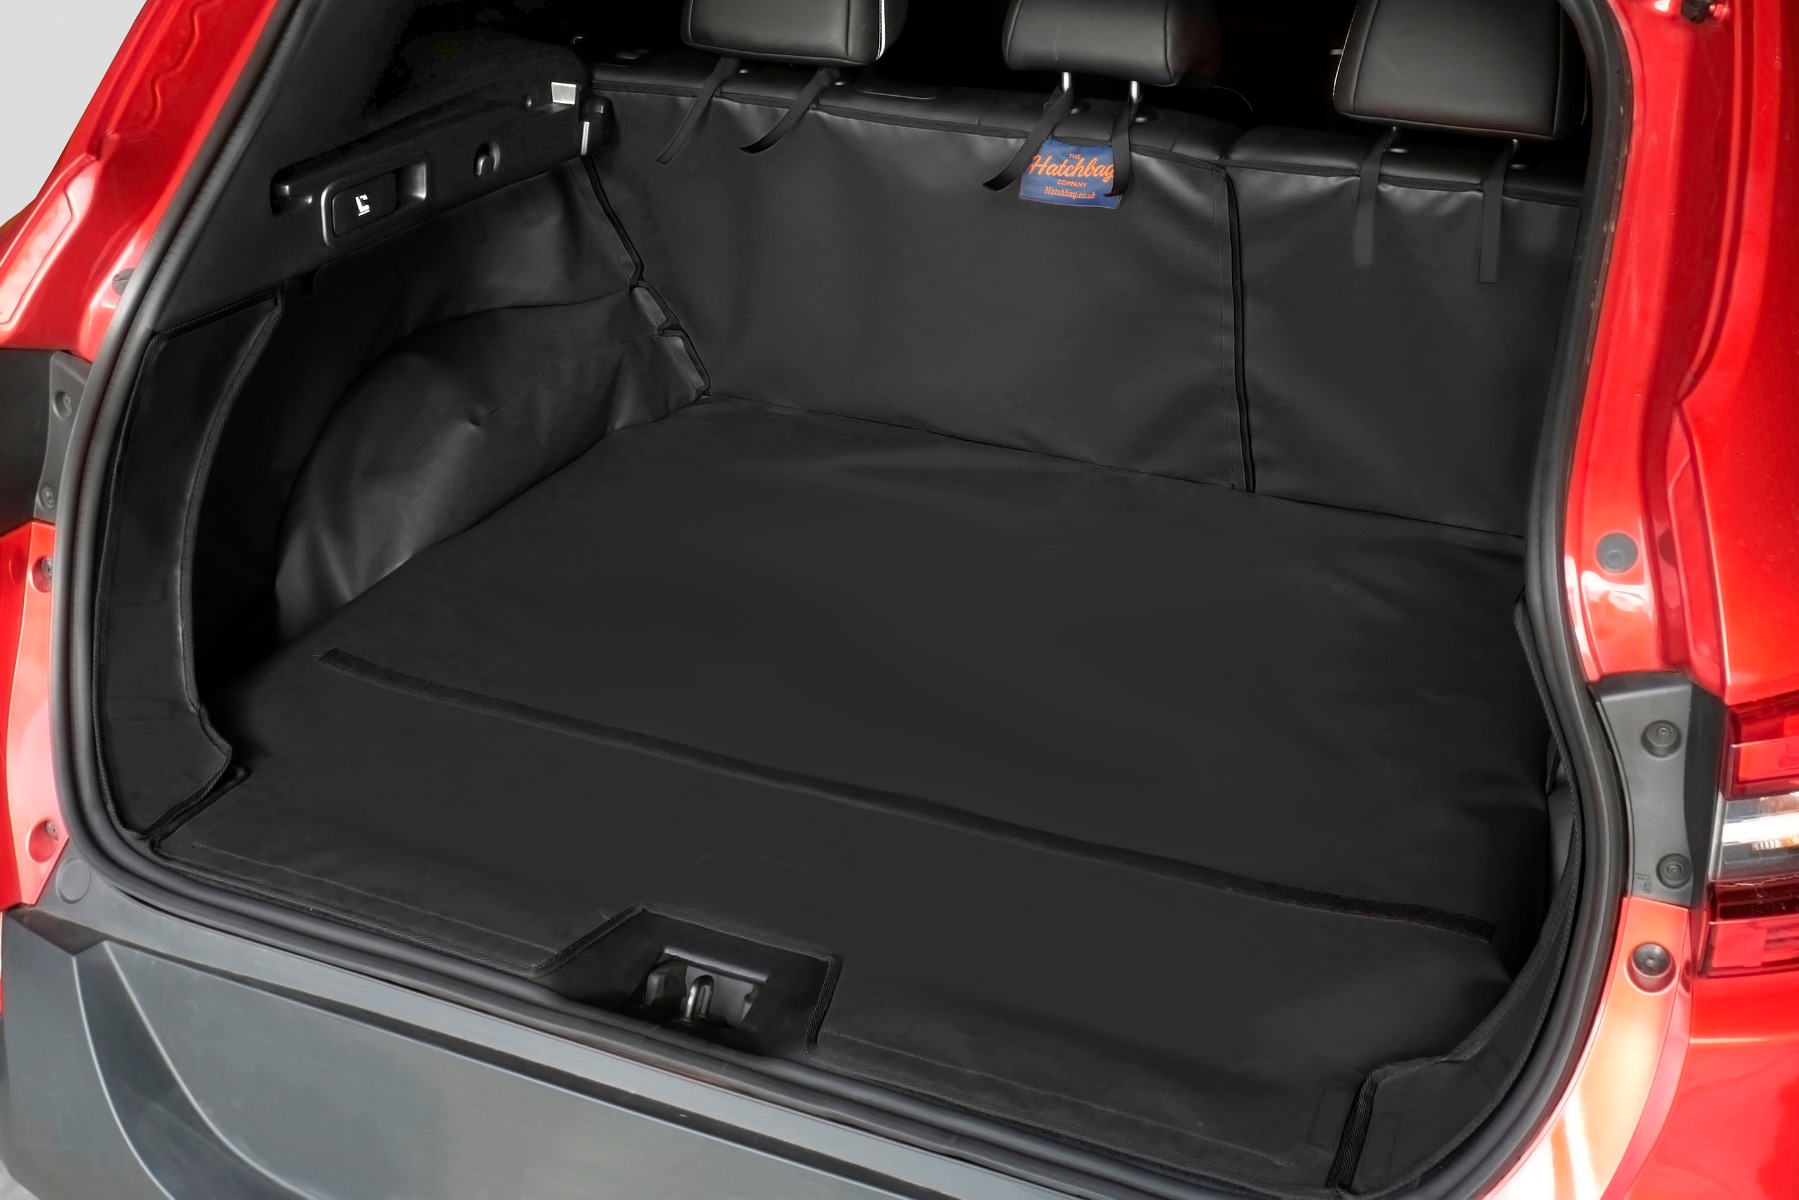 Hatchbag boot liner in black